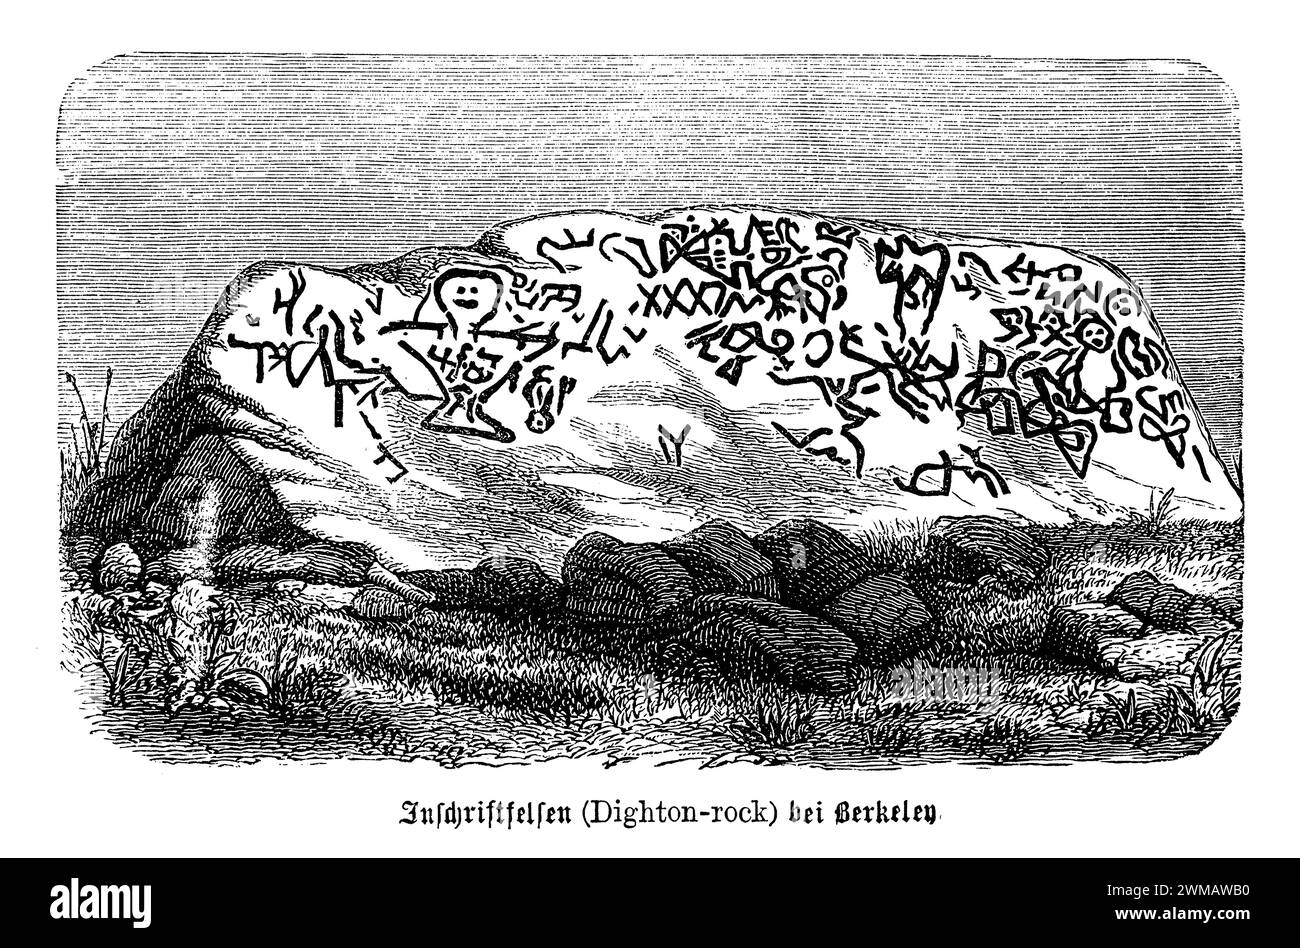 Les pétroglyphes de Dighton Rock, situé à Berkley, Massachusetts, sont une collection d'inscriptions mystérieuses et de sculptures trouvées sur un rocher de 40 tonnes sur les rives de la rivière Taunton. Ces pétroglyphes fascinent les archéologues, les historiens et les passionnés depuis des siècles, avec des théories sur leurs origines allant des tribus amérindiennes aux explorateurs nordiques. Le rocher présente un ensemble complexe de symboles, de figures et d'inscriptions qui ont fait l'objet de diverses interprétations au fil des ans. Certains chercheurs suggèrent que les marques sont d'origine indigène américaine Banque D'Images